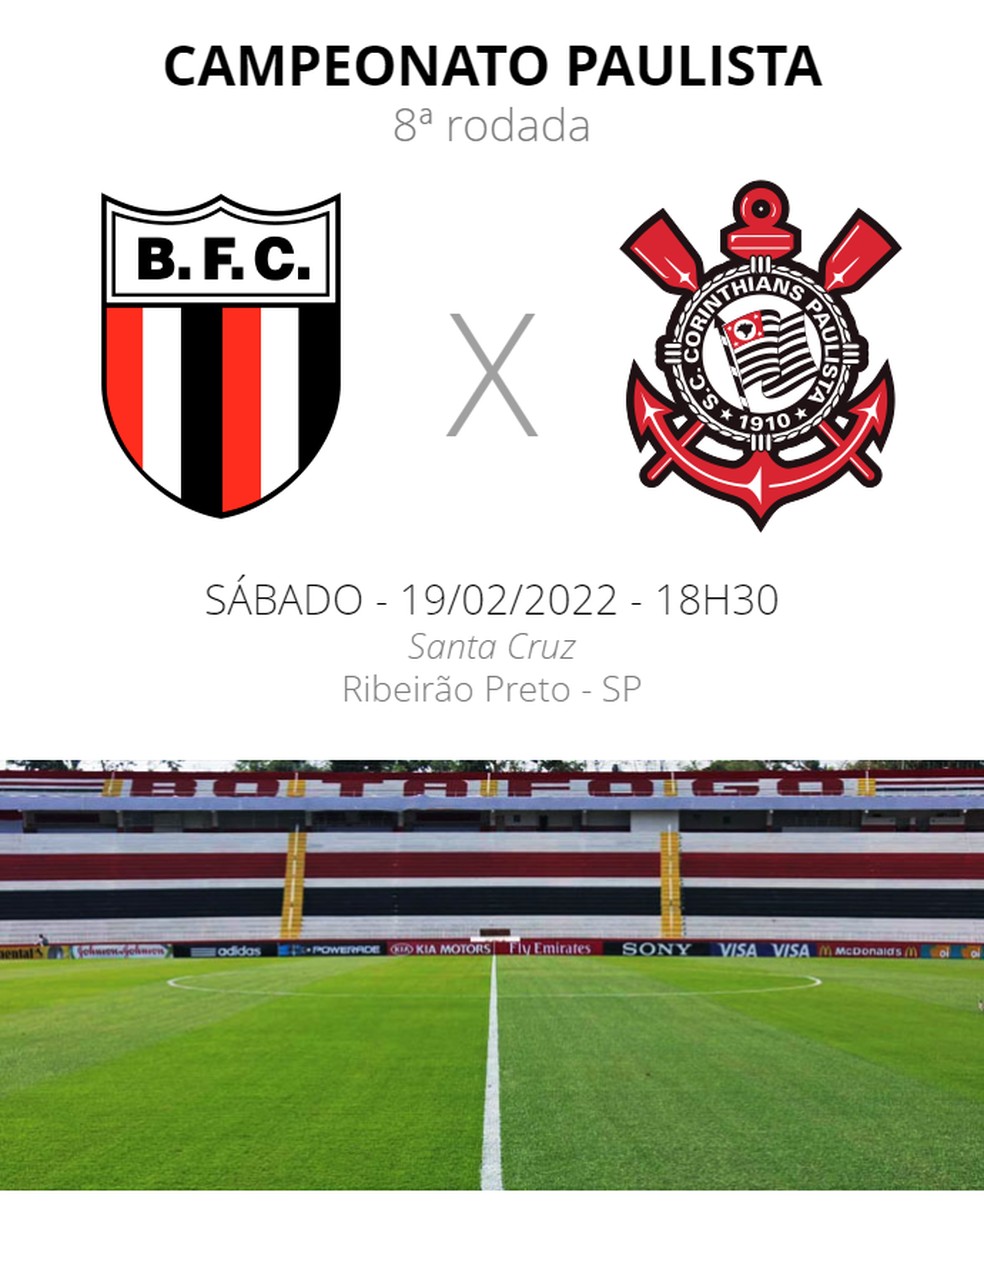 Quanto foi o jogo do Botafogo de Ribeirão Preto?